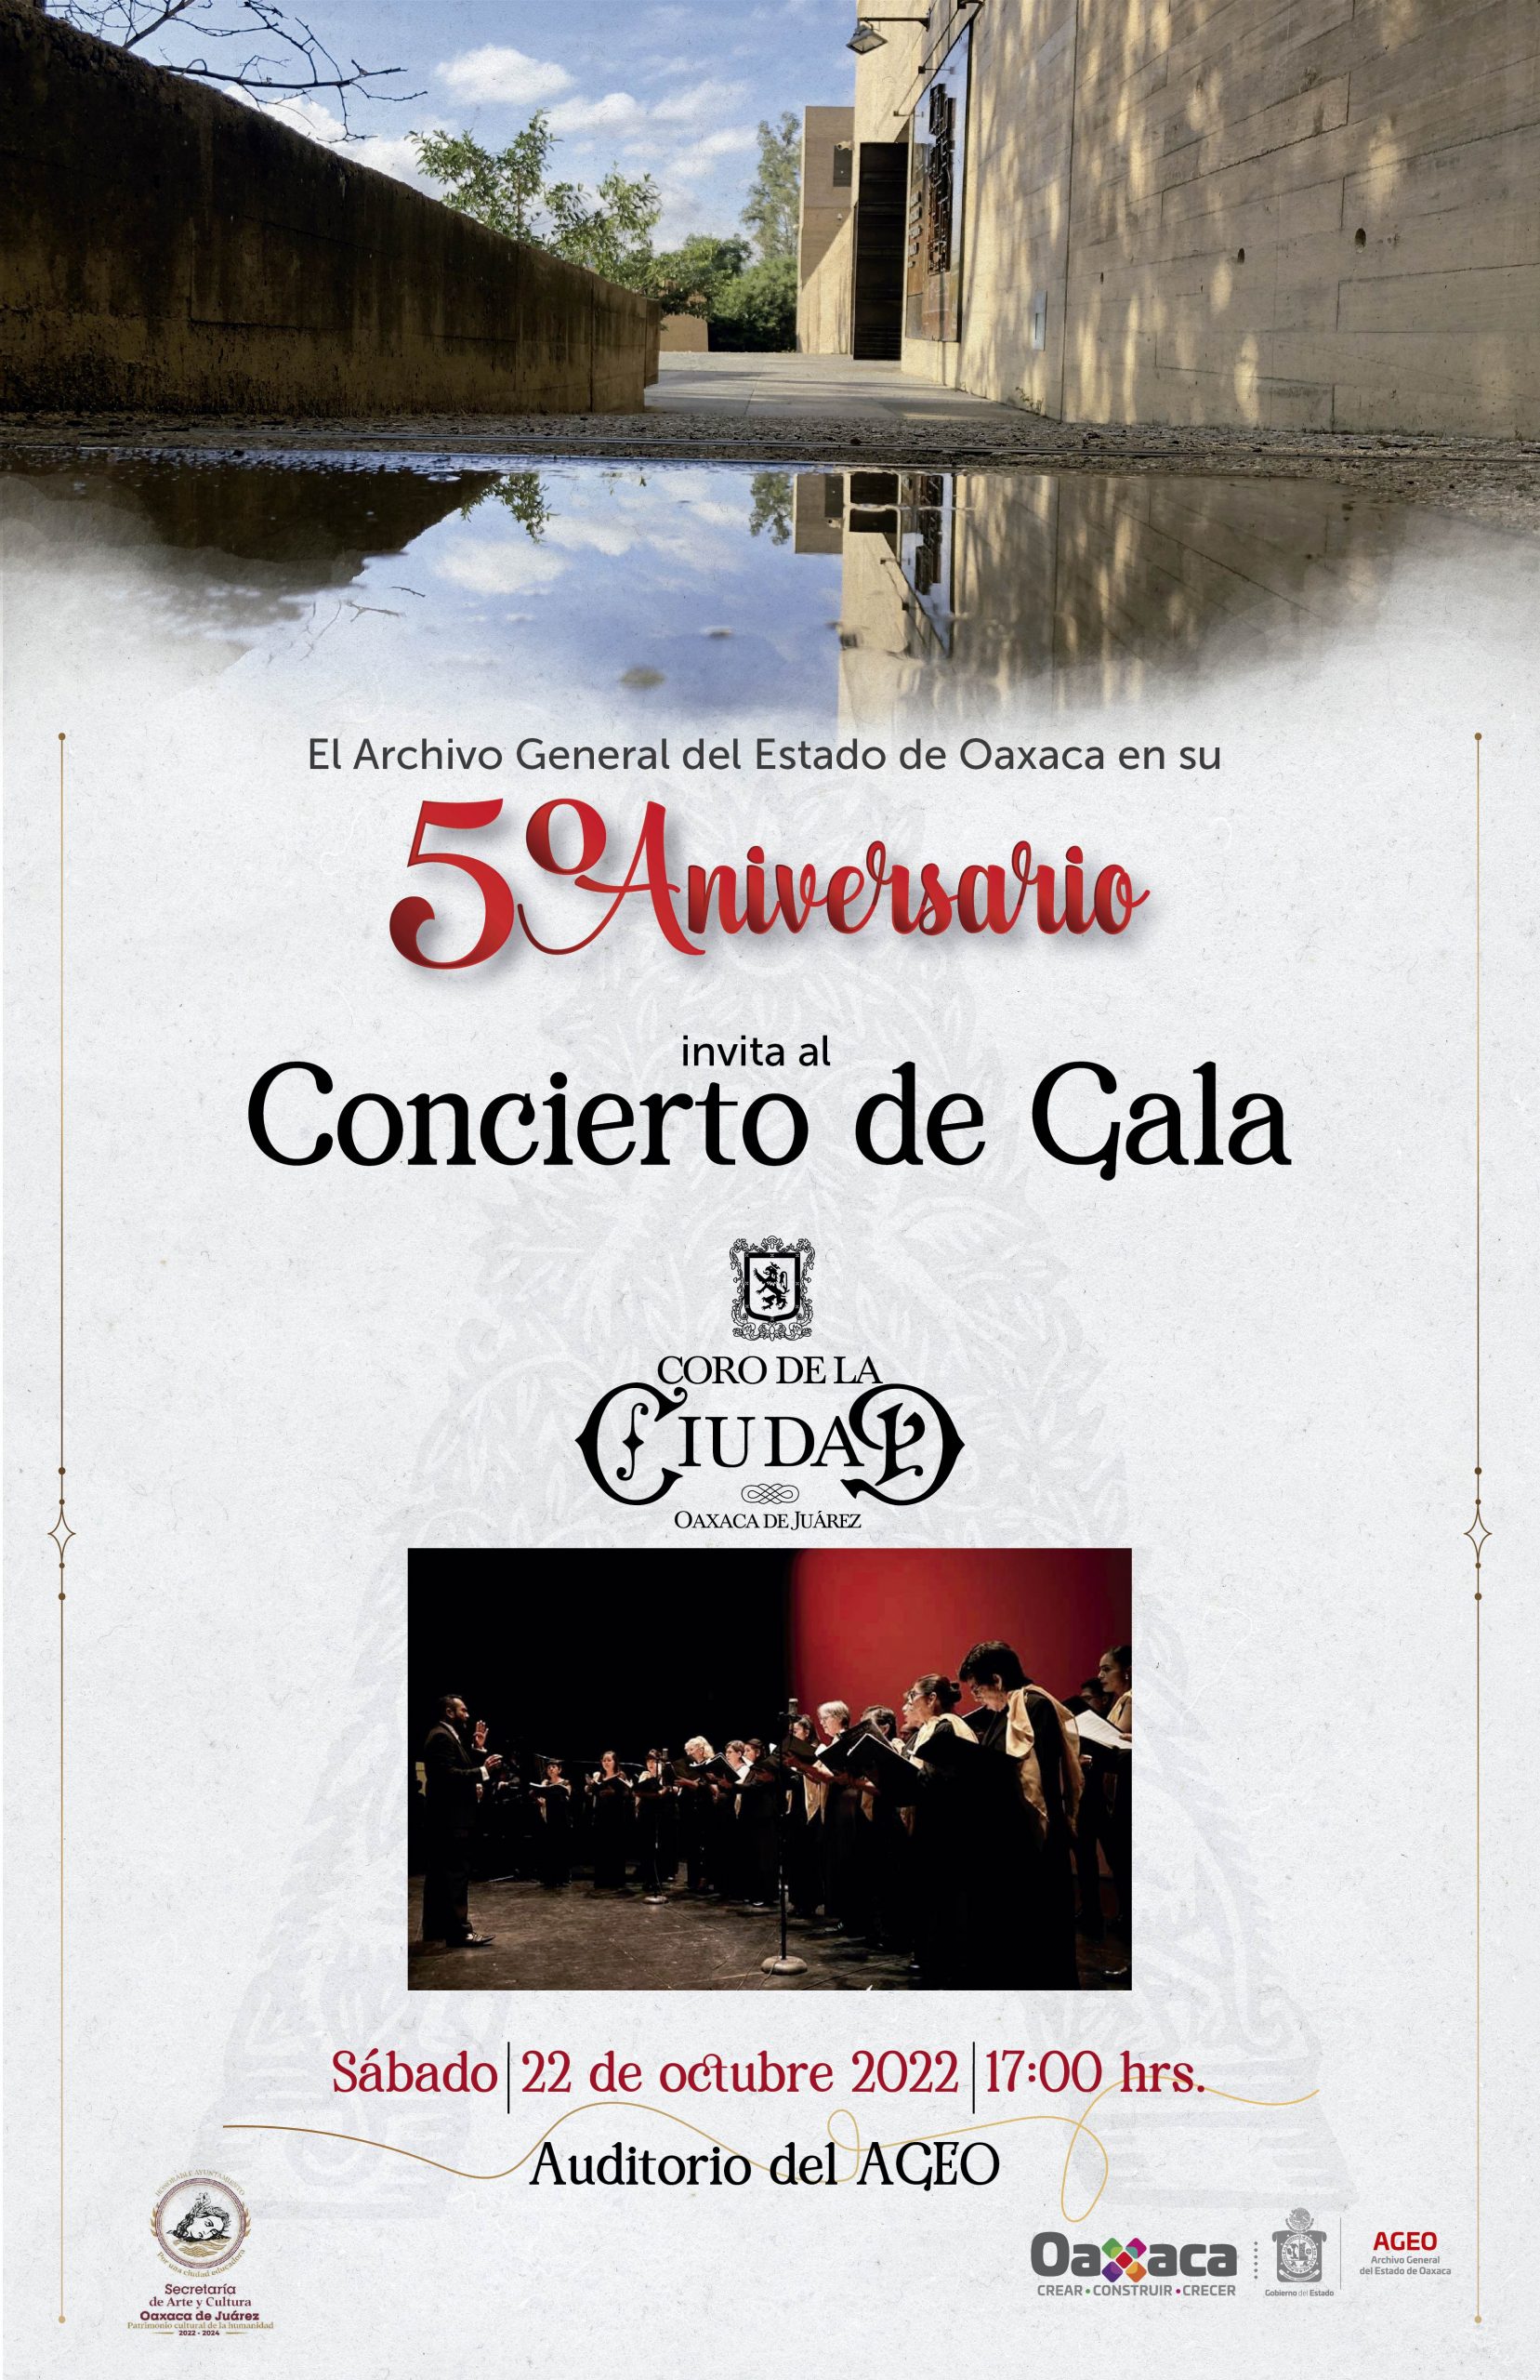 5º. Aniversario del AGEO Concierto de Gala con el Coro de la Ciudad